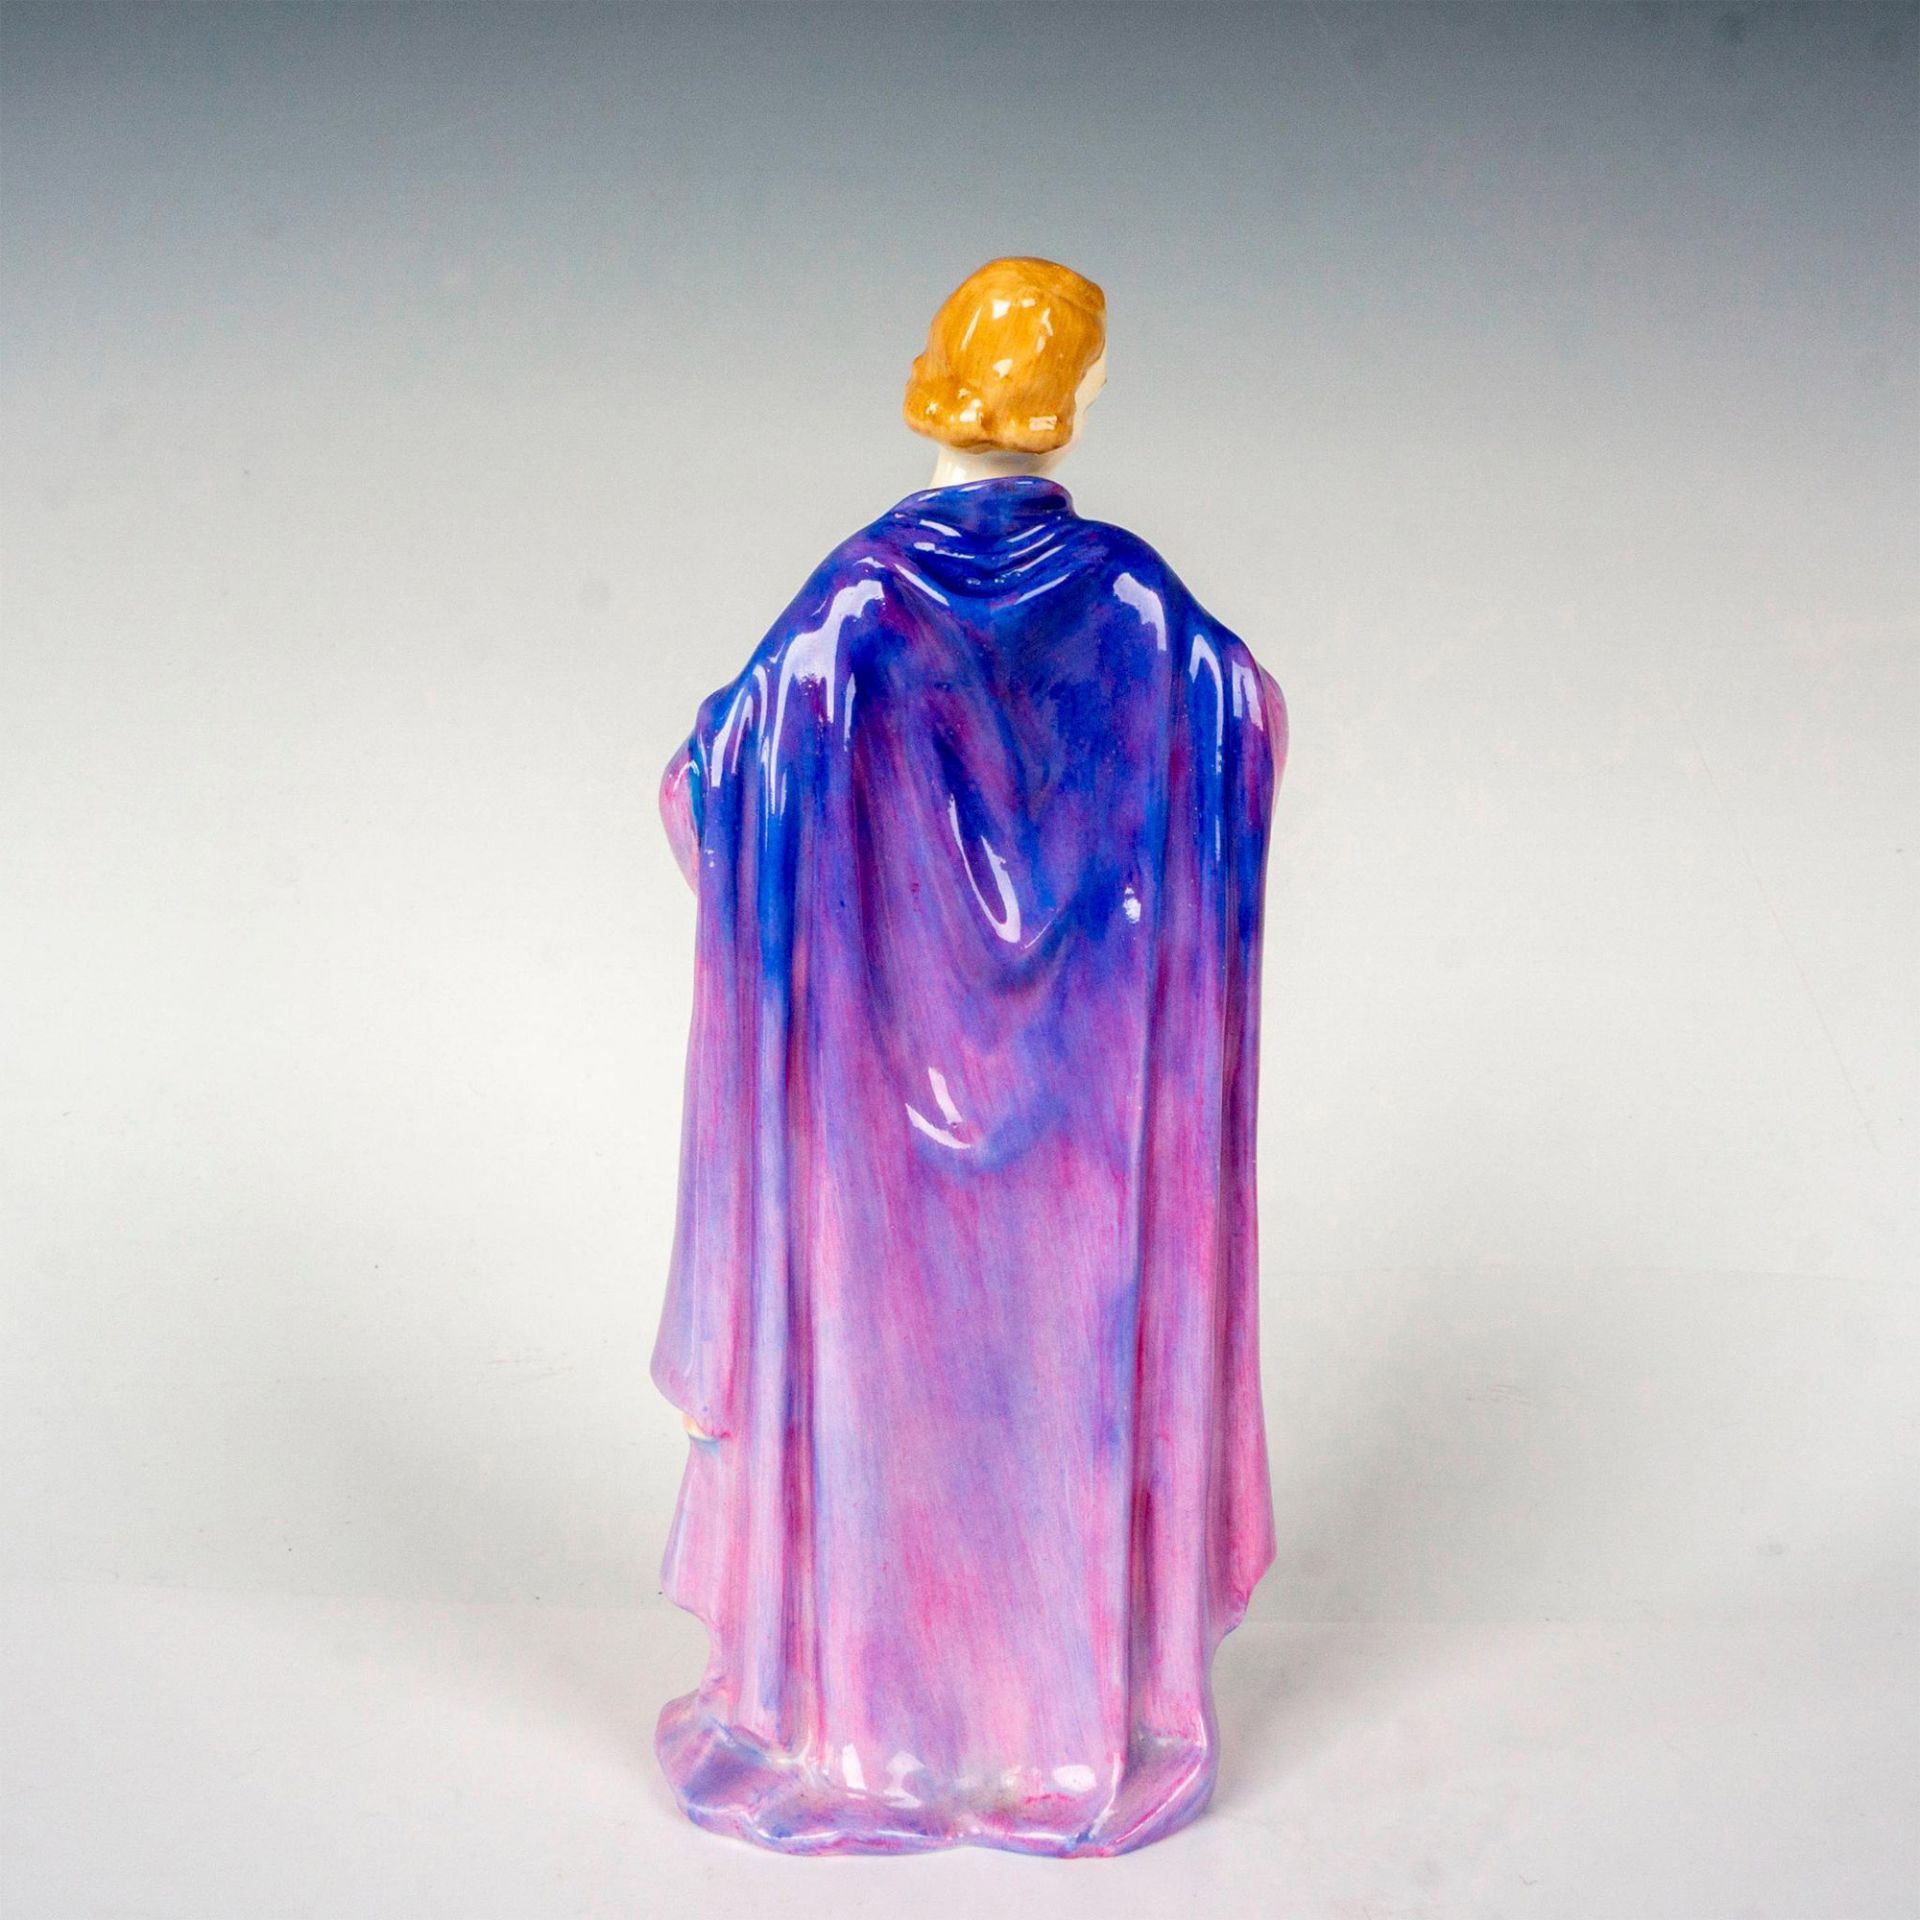 Clothilde HN1599 - Royal Doulton Figurine - Image 2 of 3